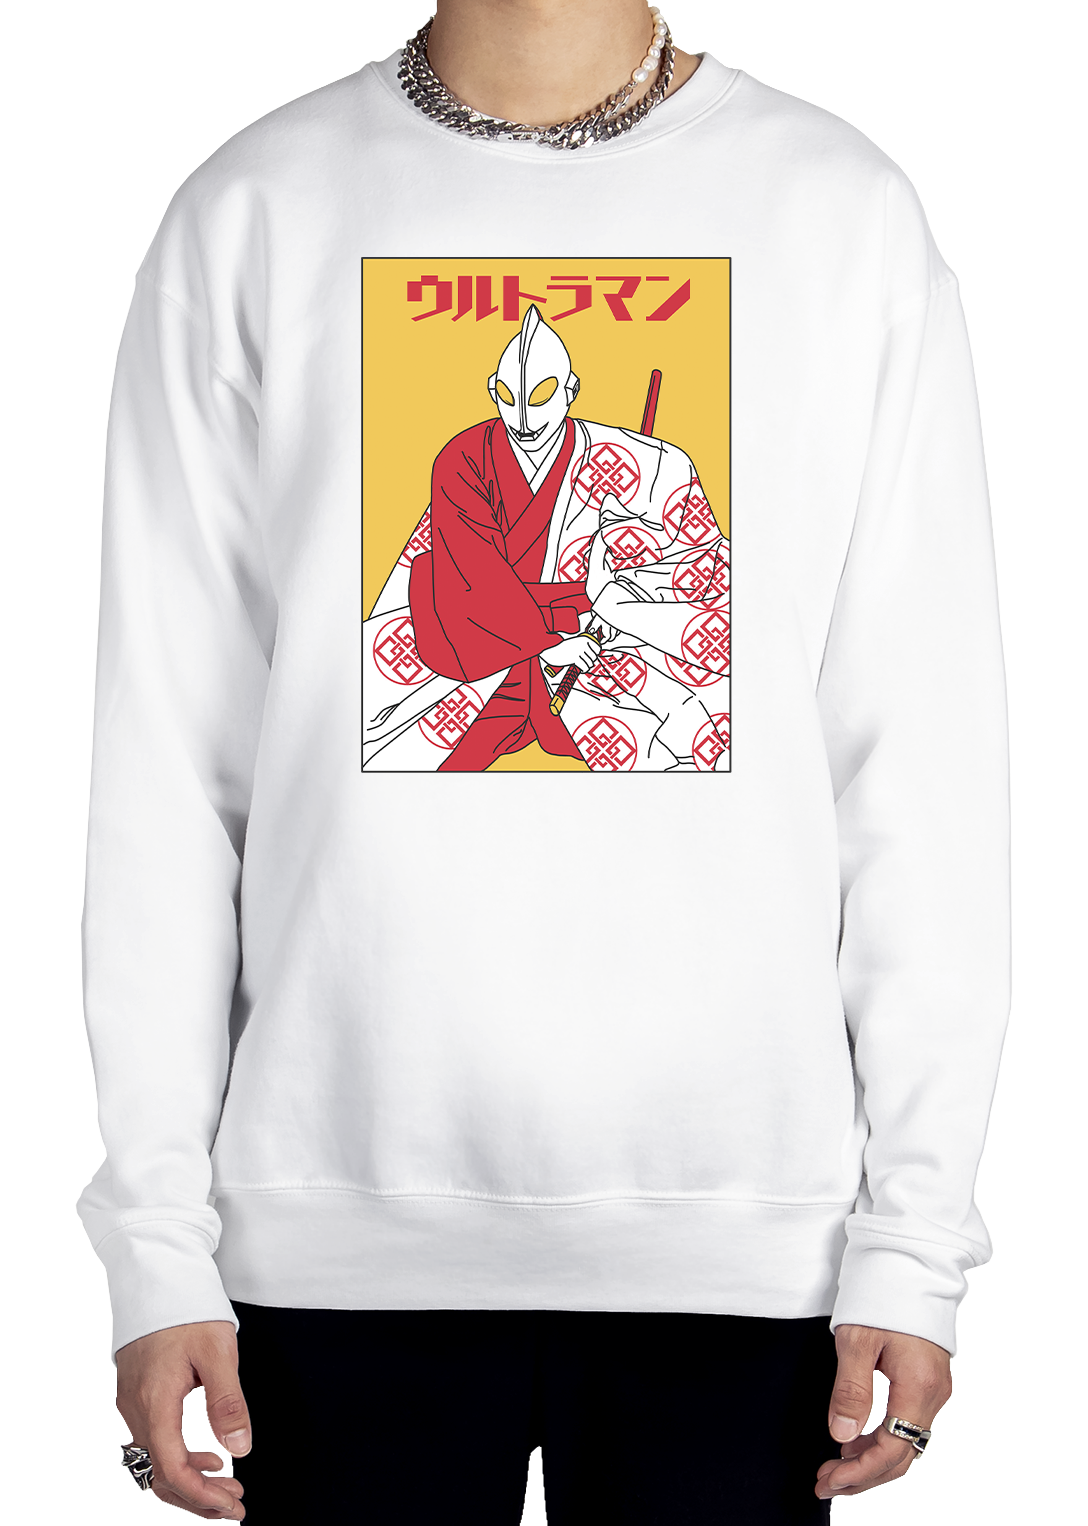 Samurai Ultraman Sweatshirt